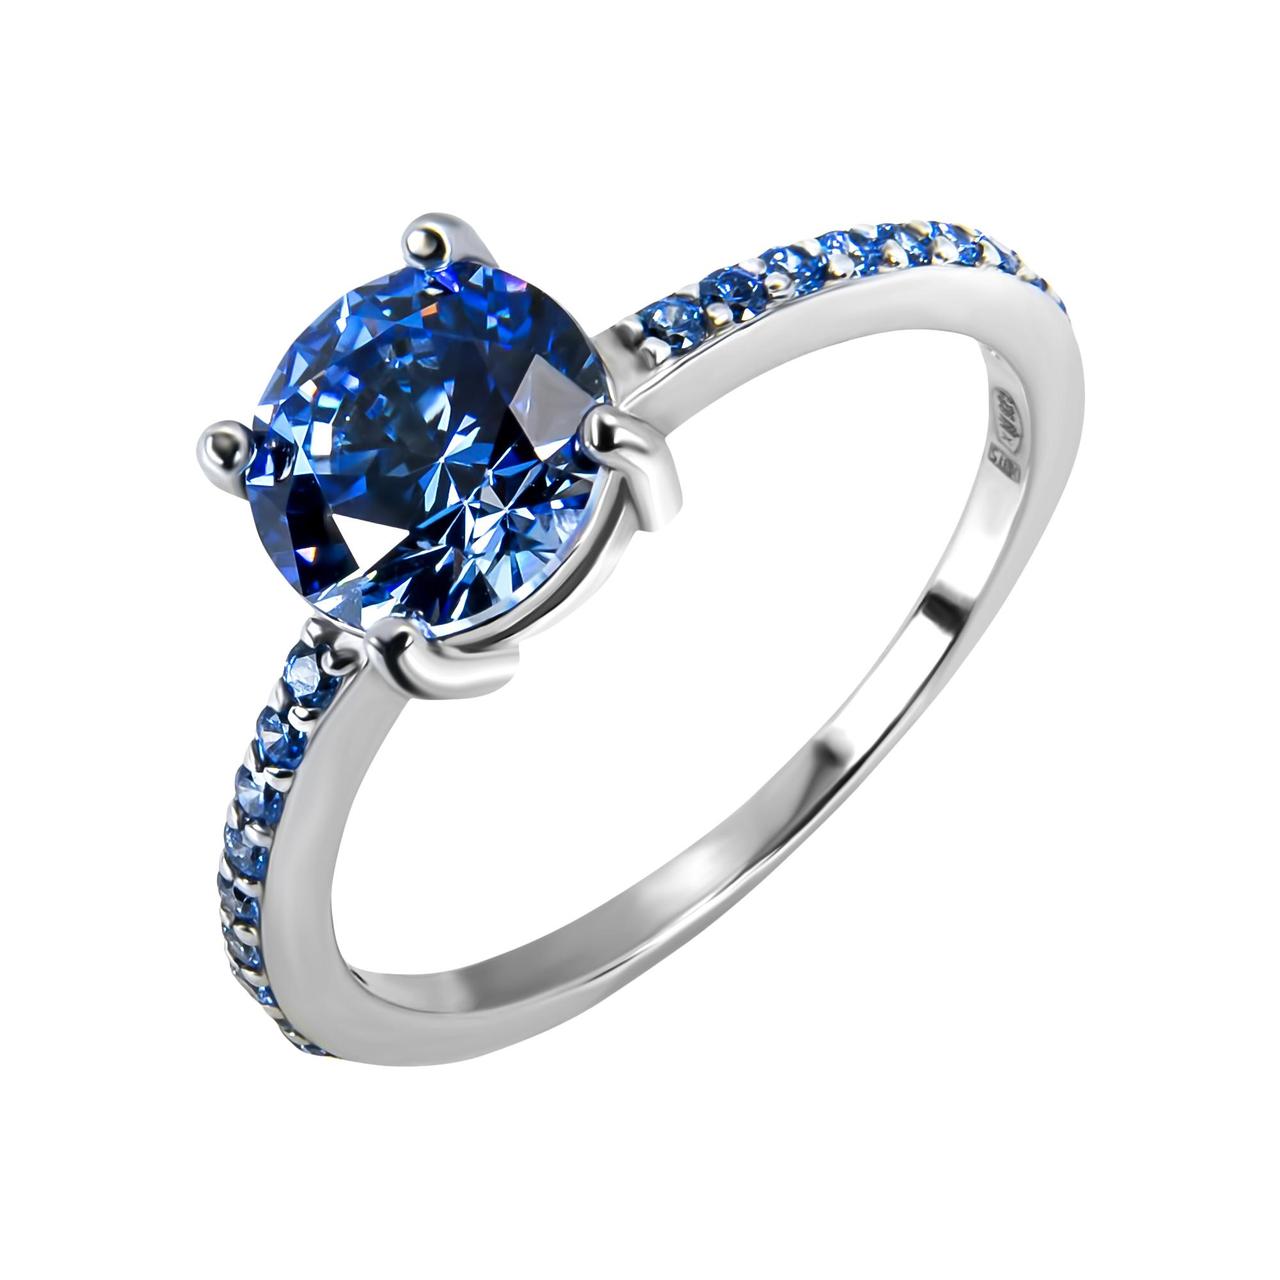 

Женское кольцо помолвочное с синим камнем Swarovski Элизабет